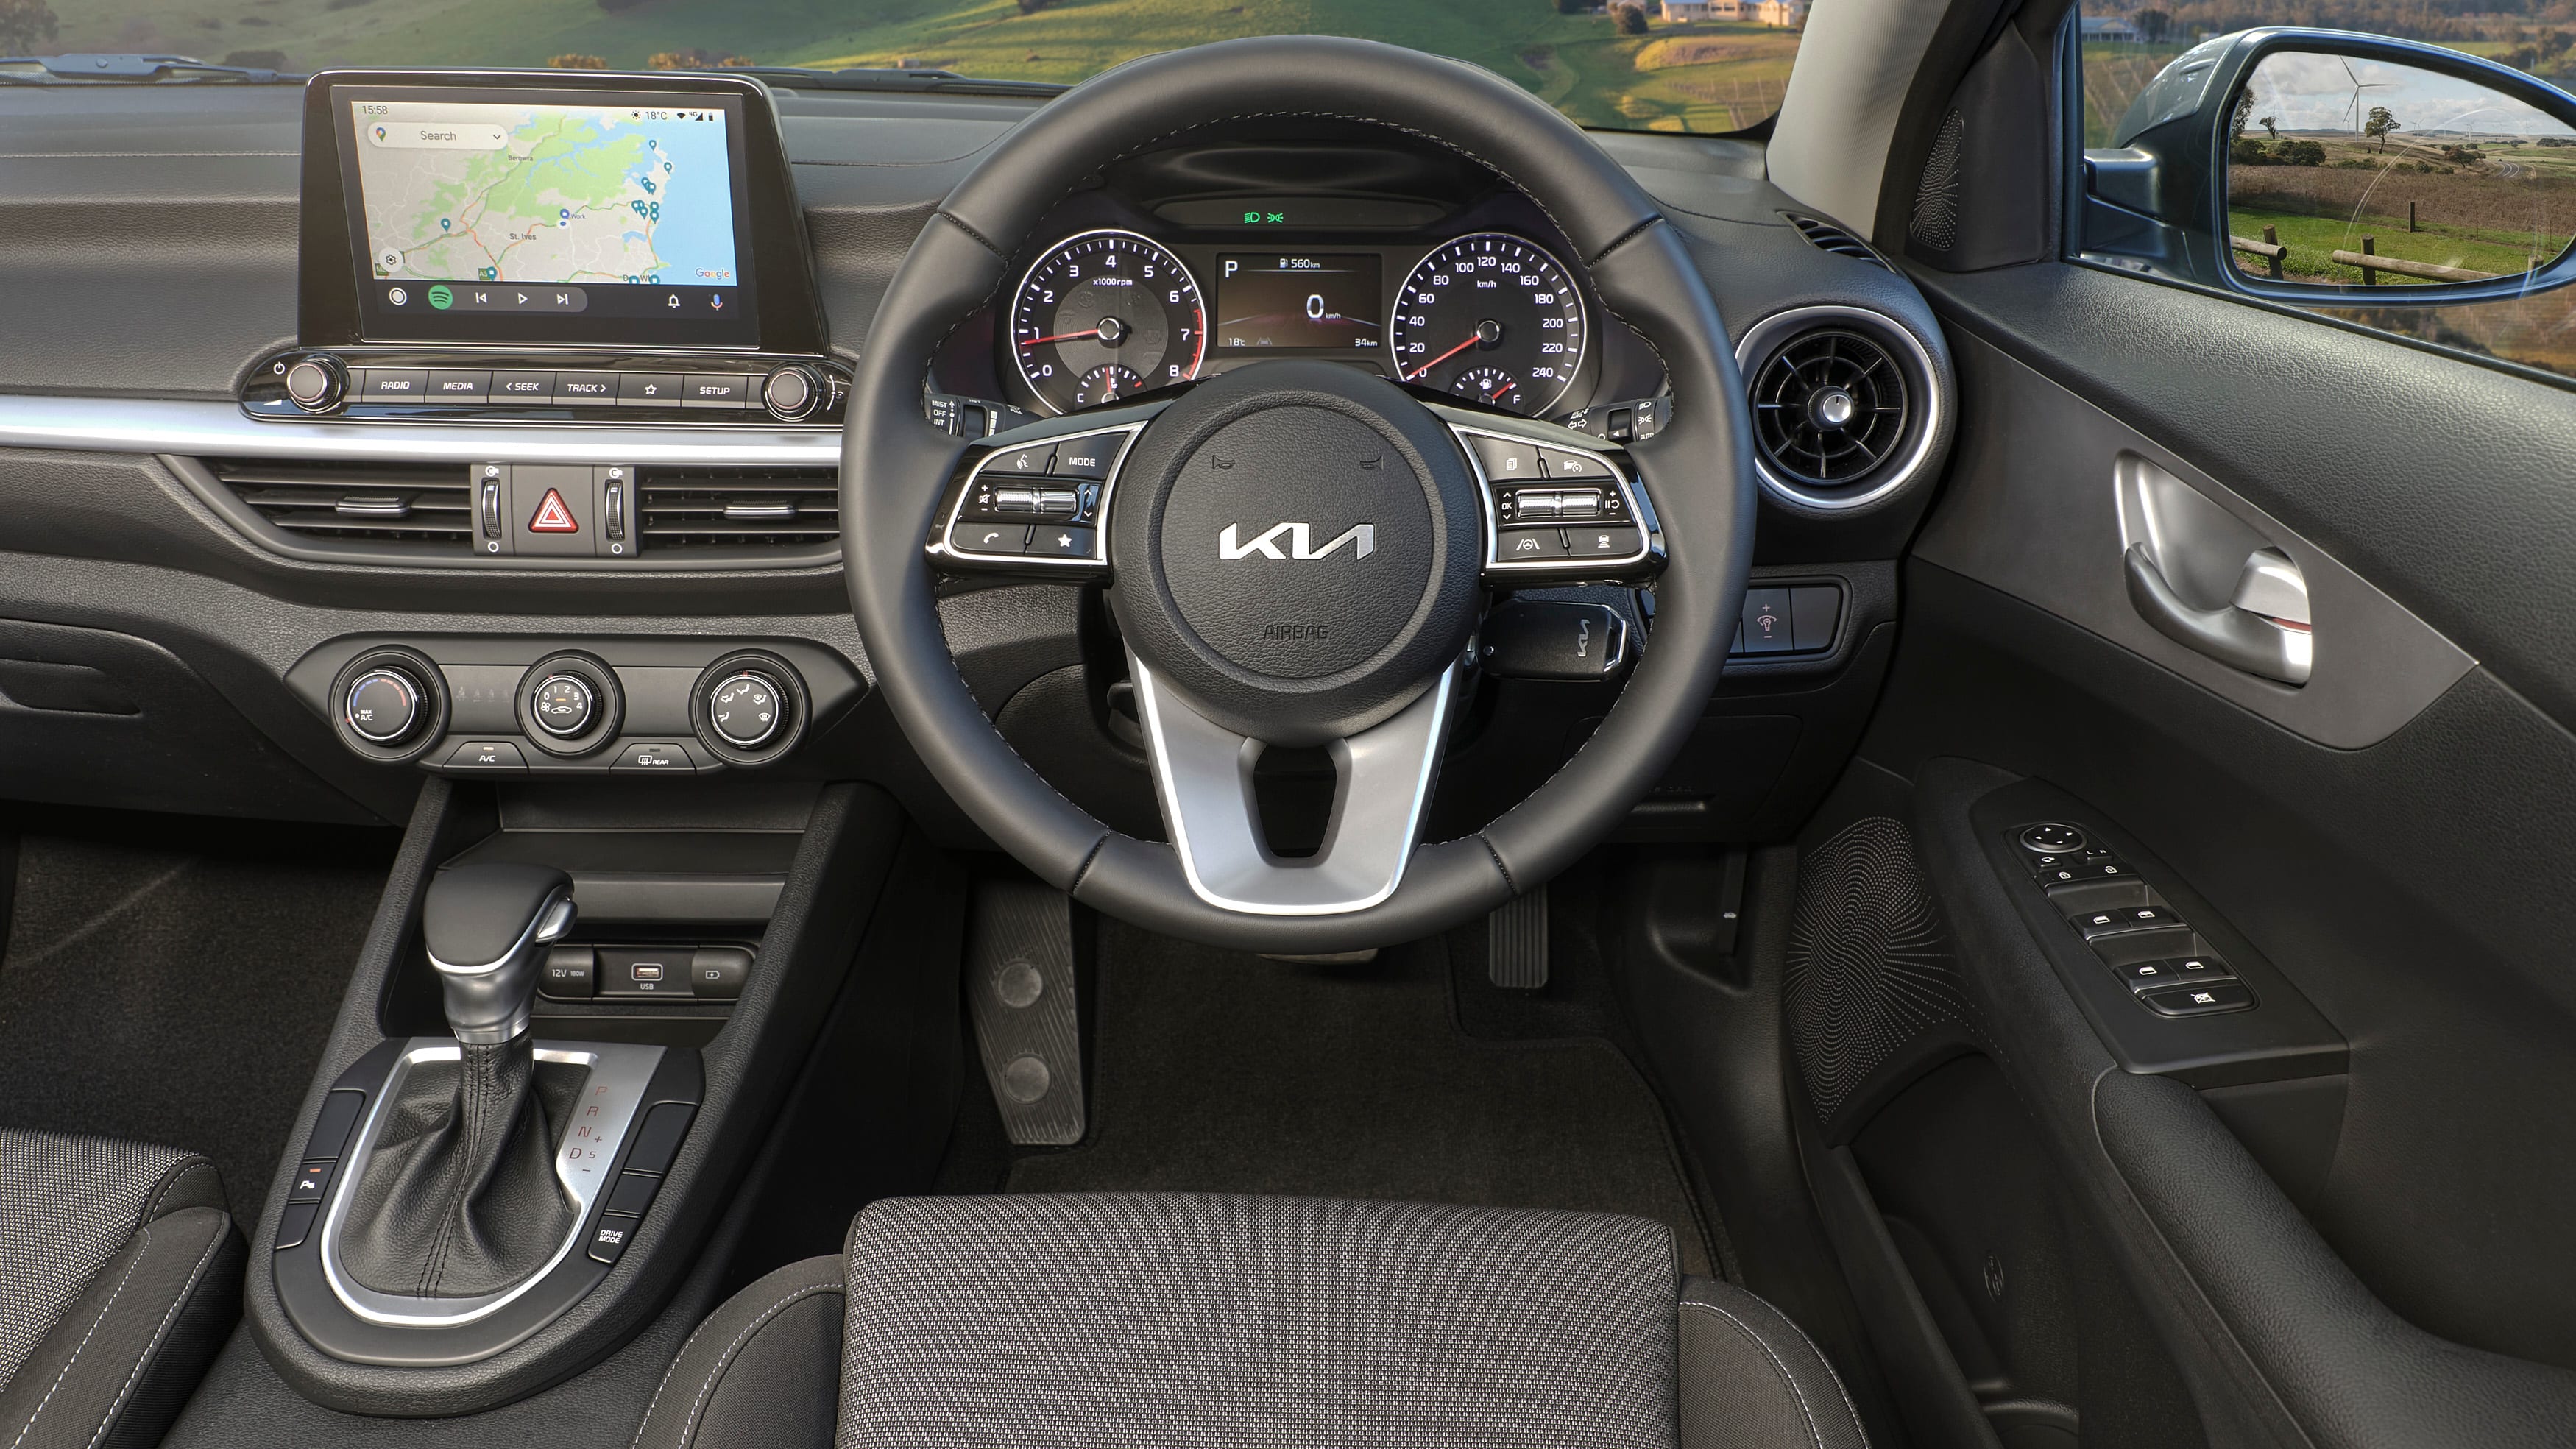 2021 Kia Cerato price and specs: Full range on sale now - Drive